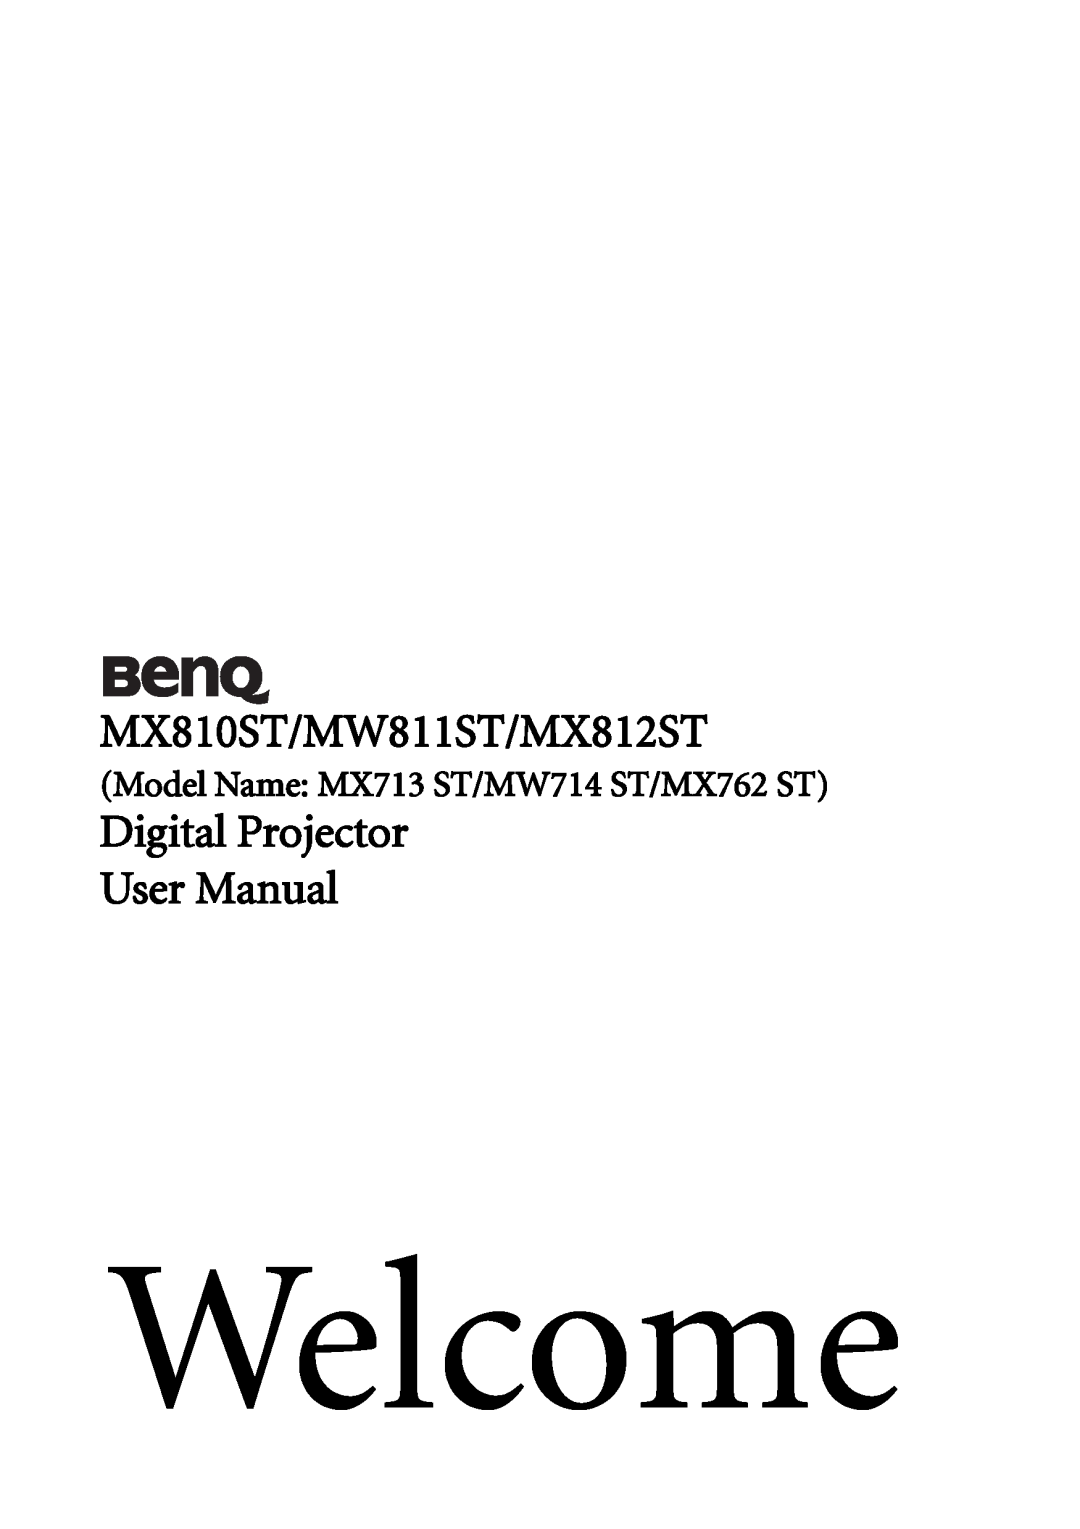 BenQ user manual MX810ST/MW811ST/MX812ST, Digital Projector User Manual, Model Name MX713 ST/MW714 ST/MX762 ST, Welcome 